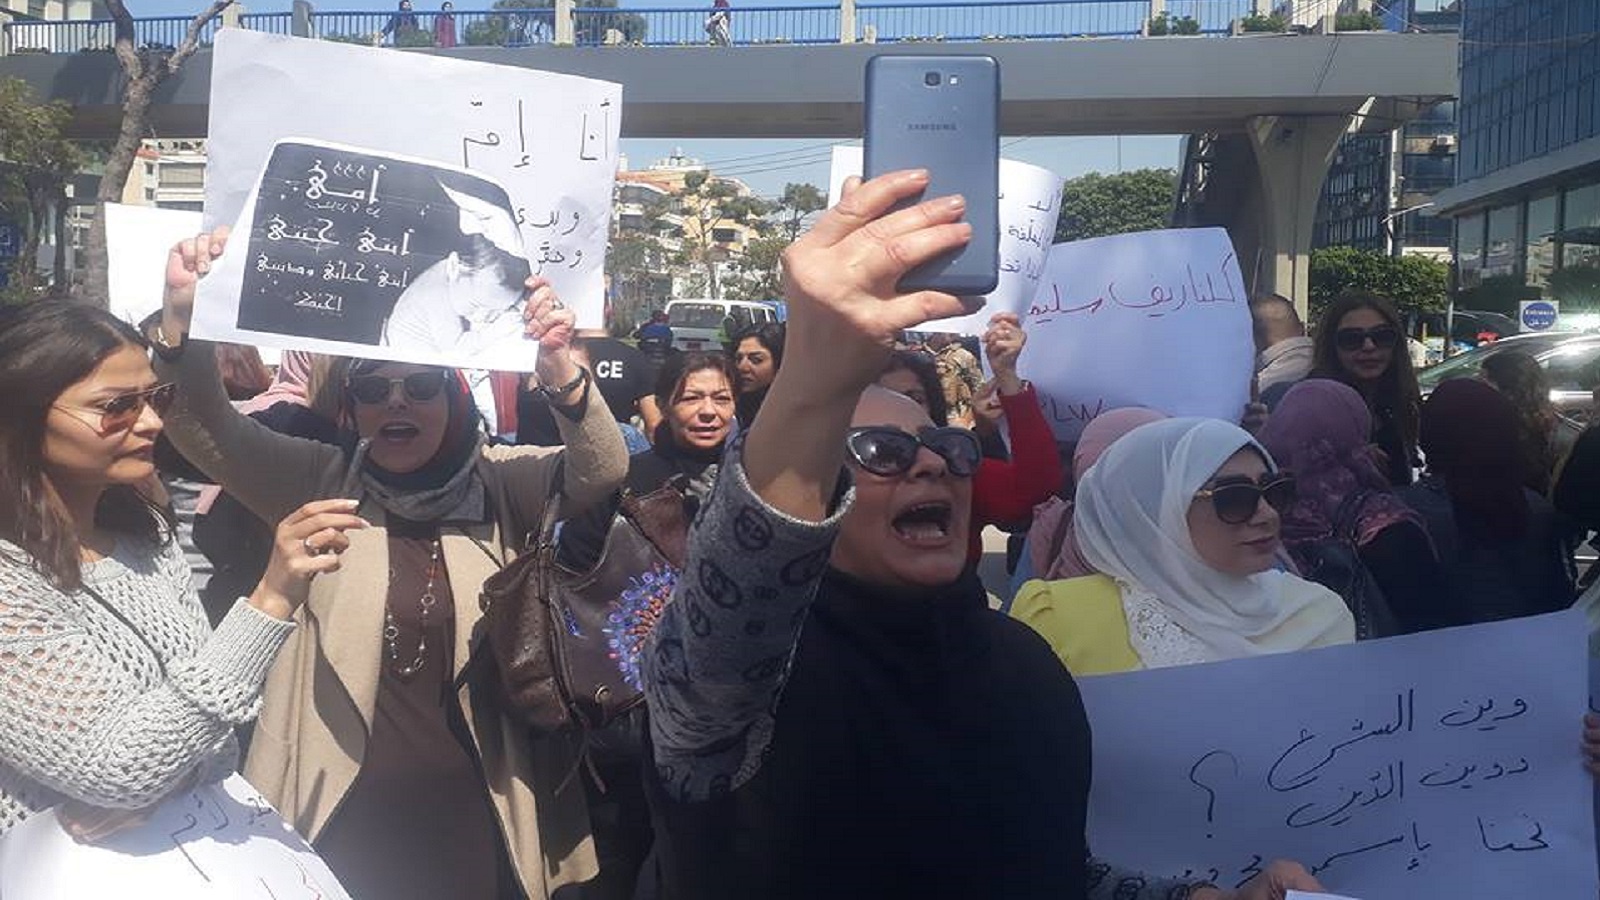 "ثورة امرأة شيعية" على سُلطة العمامة